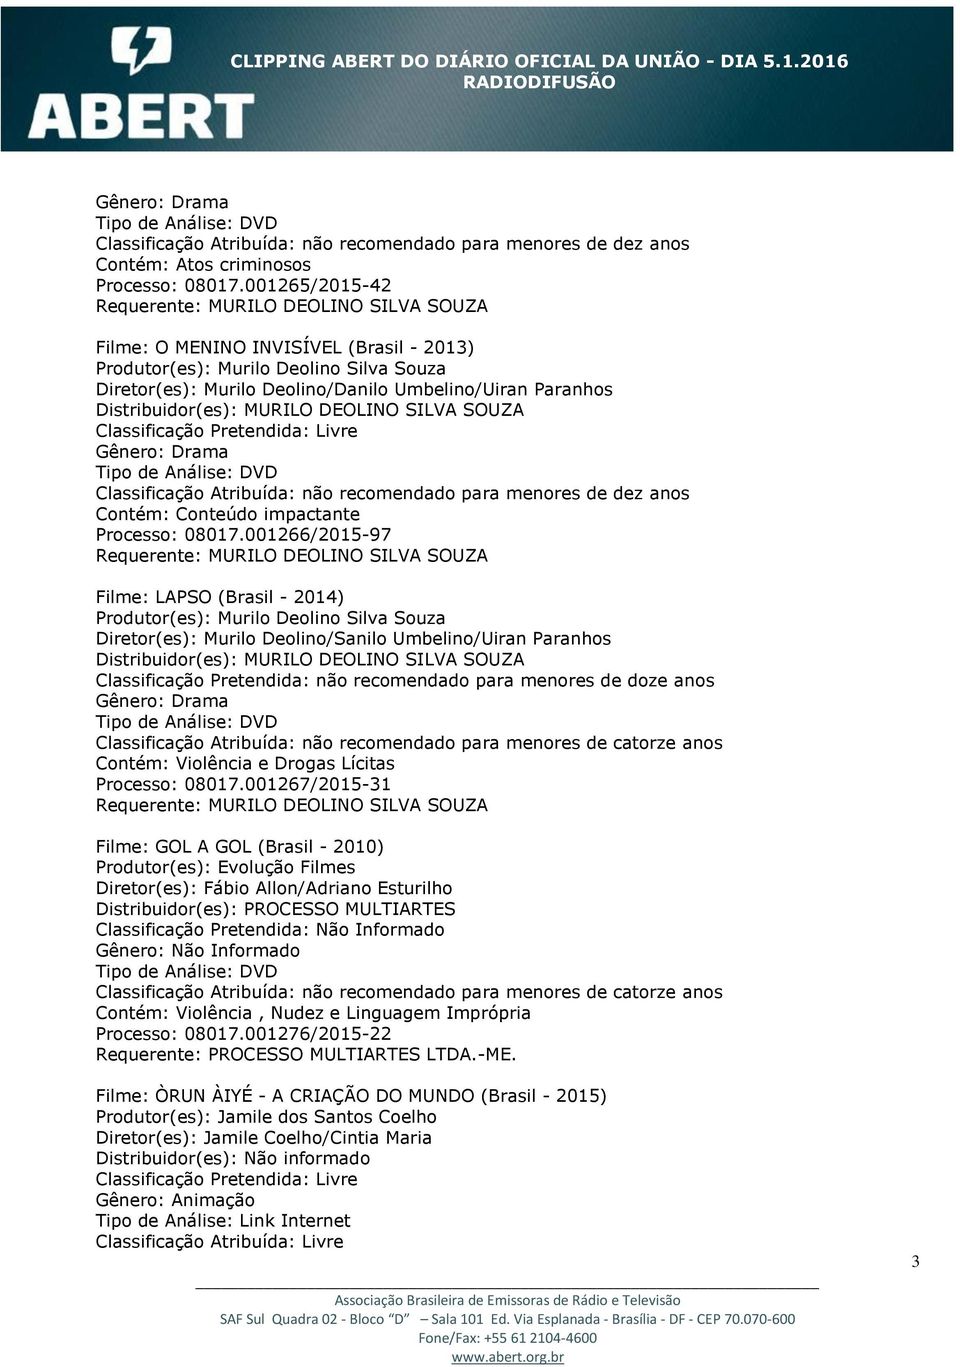 impactante Processo: 08017.001266/2015-97 Filme: LAPSO (Brasil - 2014) Diretor(es): Murilo Deolino/Sanilo Umbelino/Uiran Paranhos Contém: Violência e Drogas Lícitas Processo: 08017.